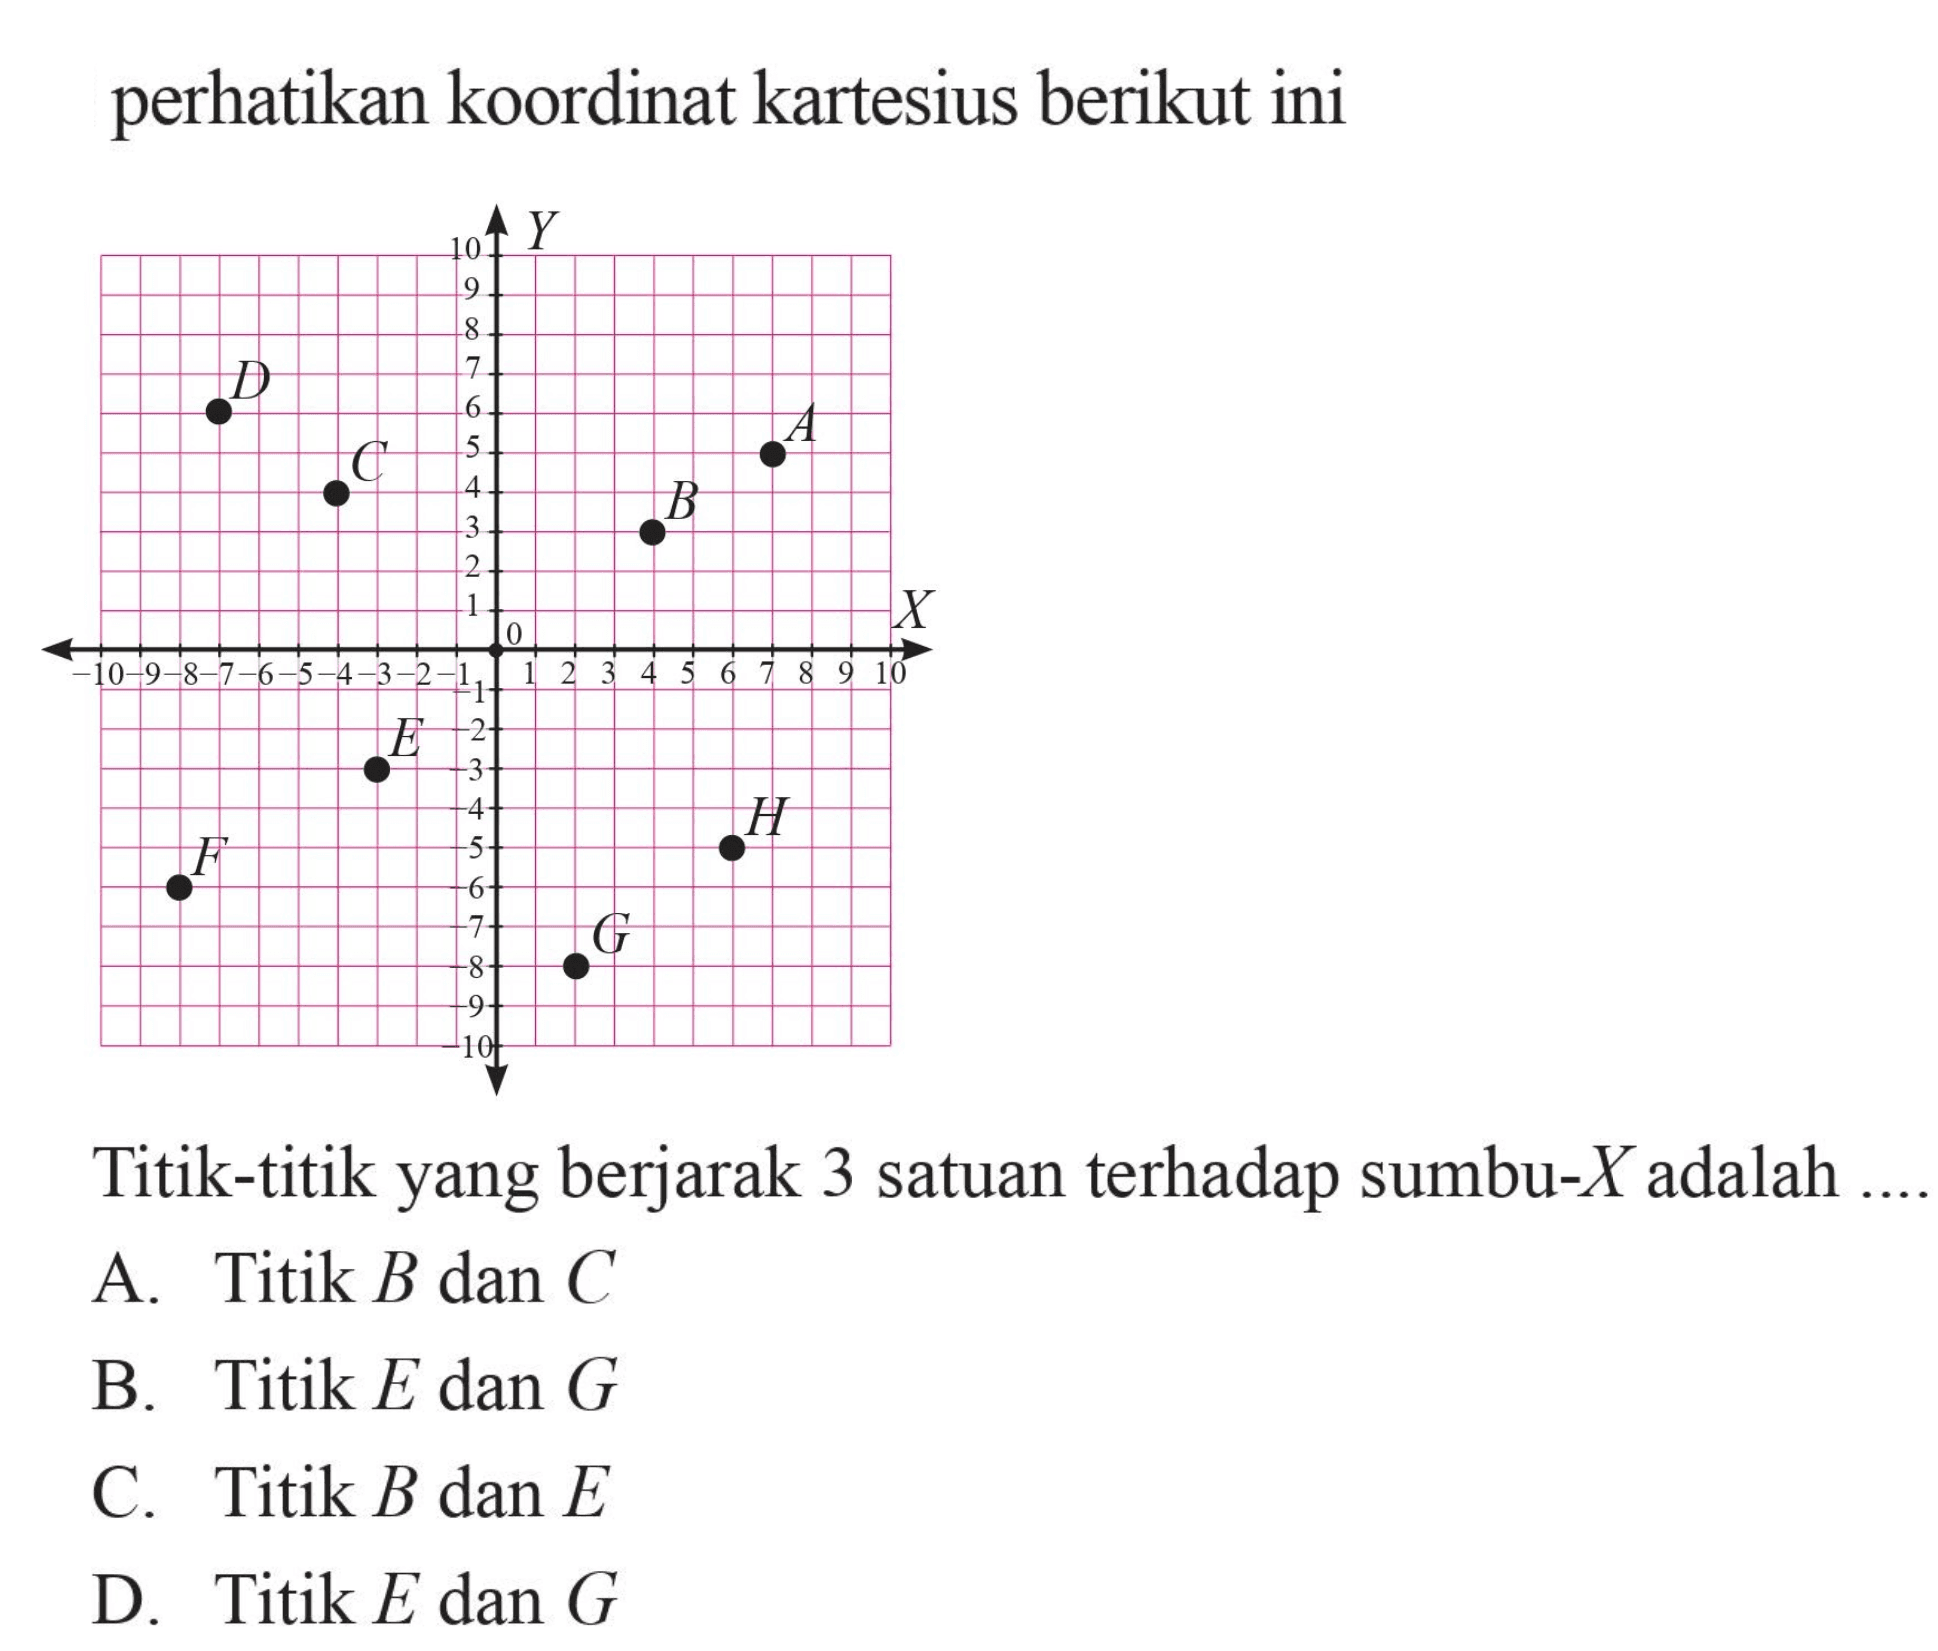 perhatikan koordinat kartesius berikut ini Titik-titik yang berjarak 3 satuan terhadap sumbu-X adalah.... A. Titik B dan C B. Titik E dan G C. Titik B dan E D. Titik E dan G